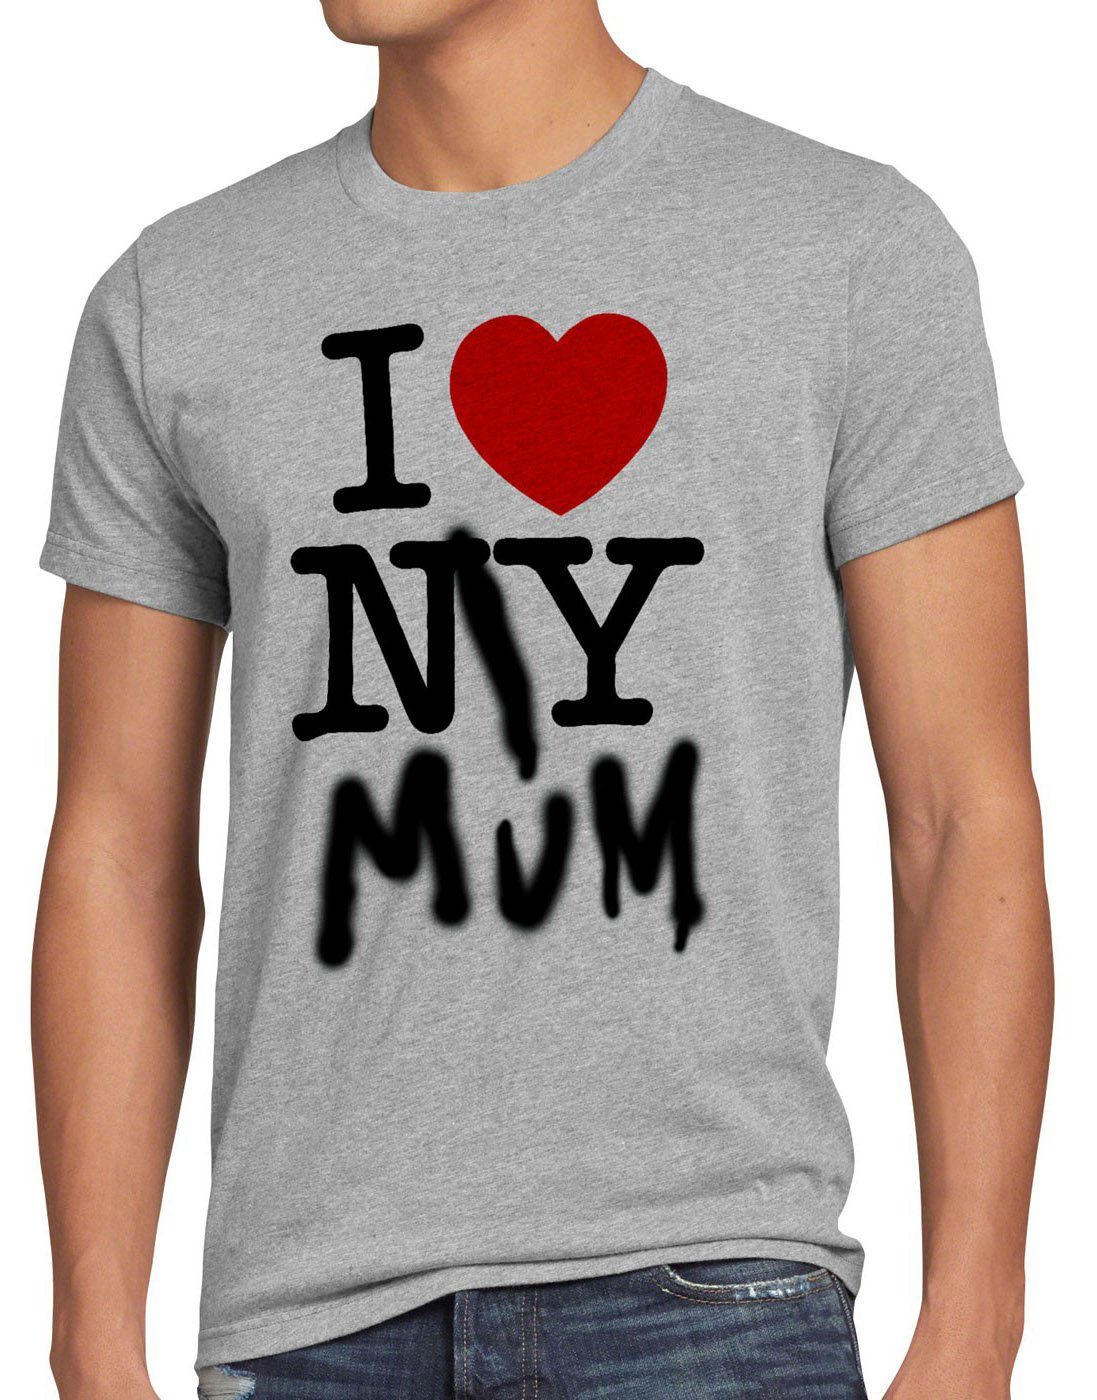 style3 Print-Shirt Herren T-Shirt I Love My Mum new york amerika ny muttertag usa herz grau meliert